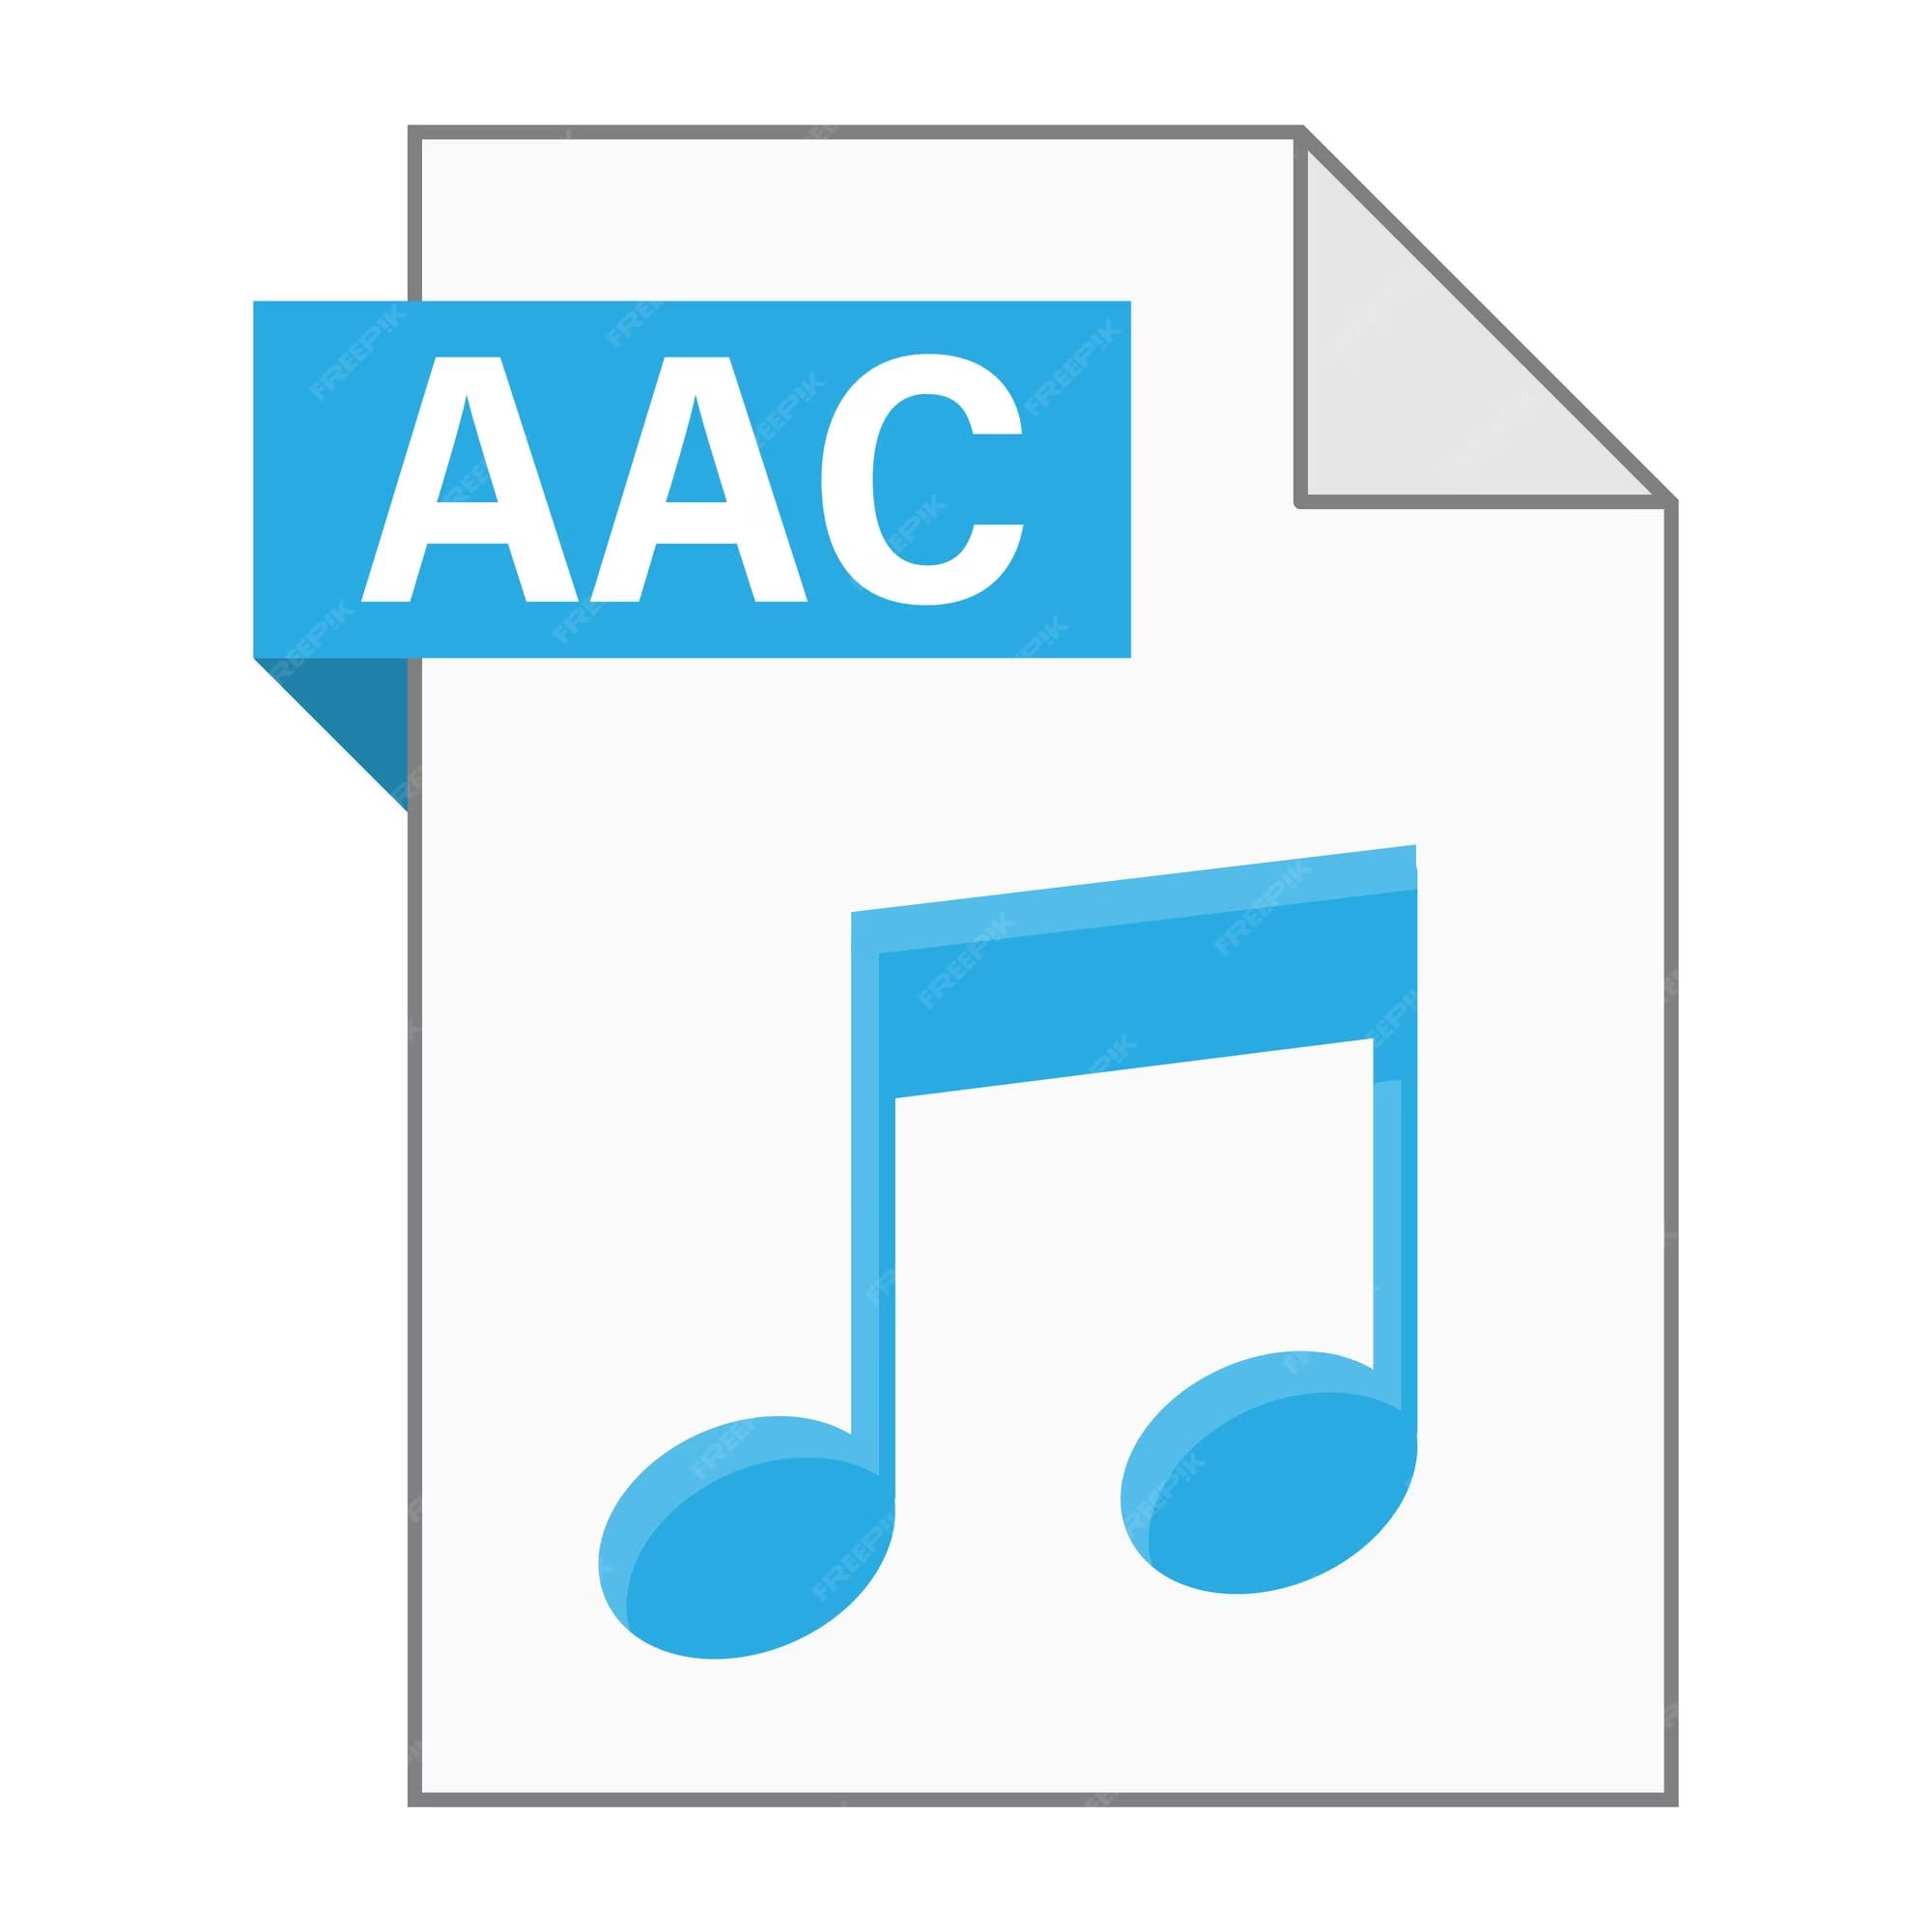 formato de áudio digital aac